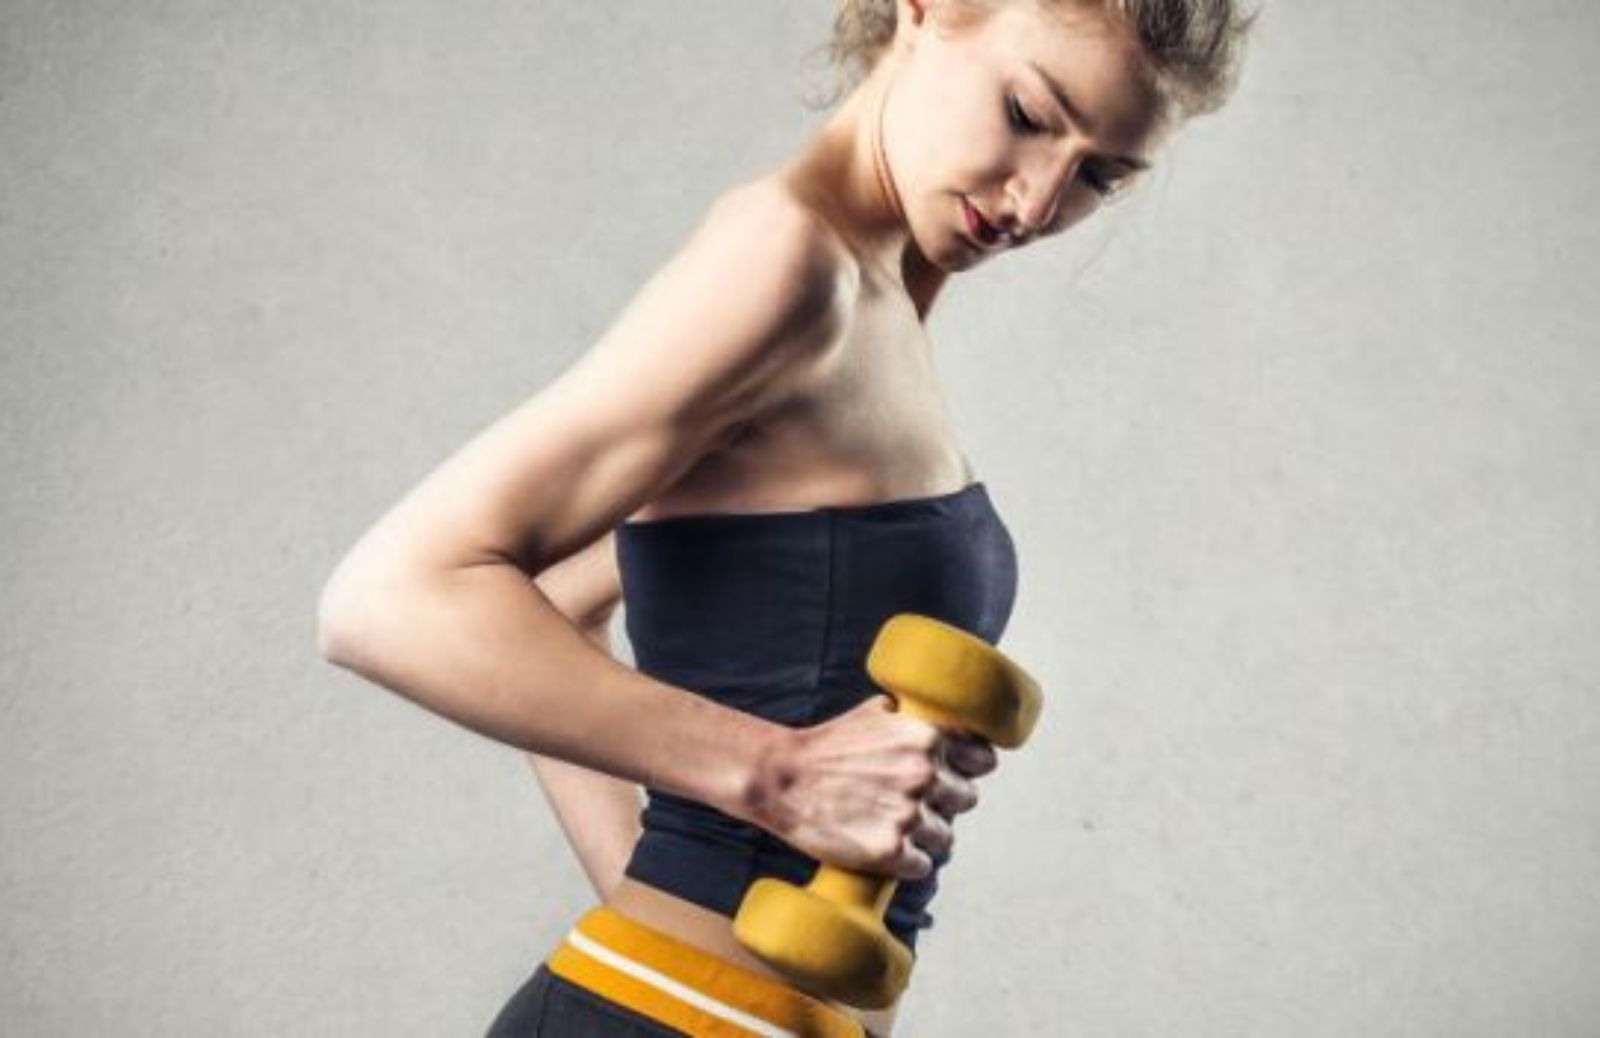 Body building: non solo muscoli, ma anche salute